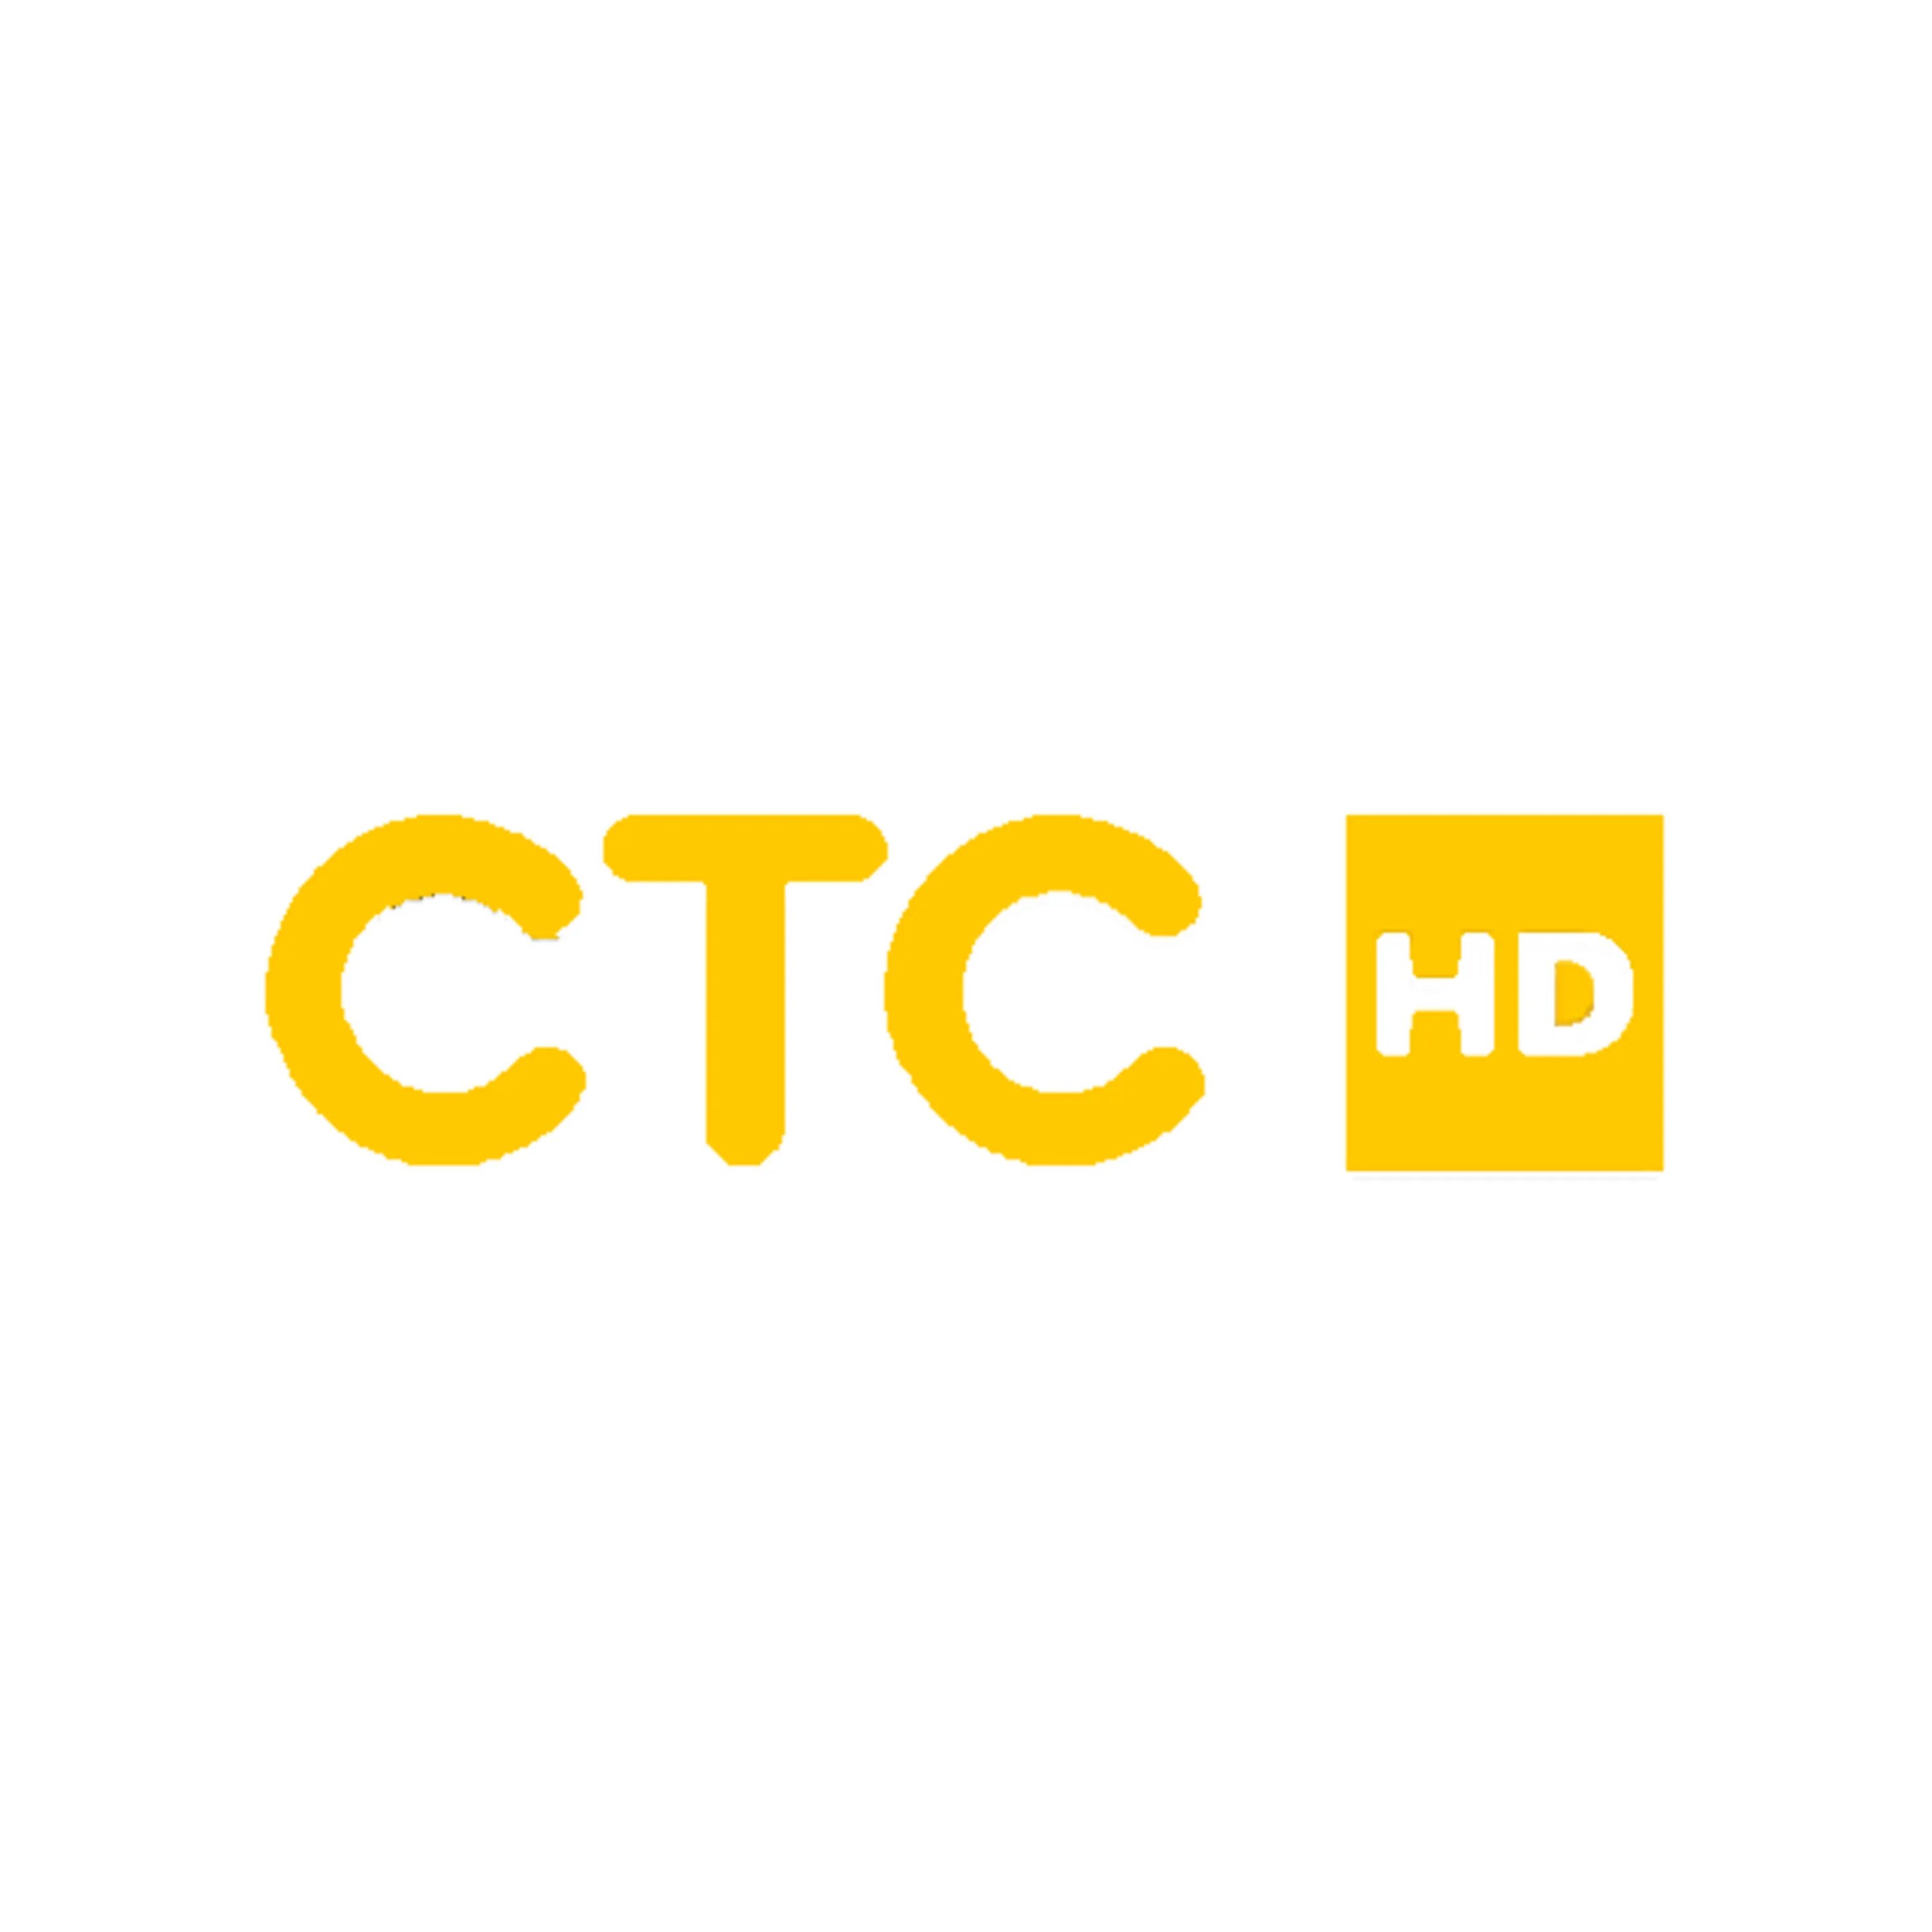 Логотип канала СТС. Ntktrfyfk CNC kjujnbg. СТС логотип 2021.